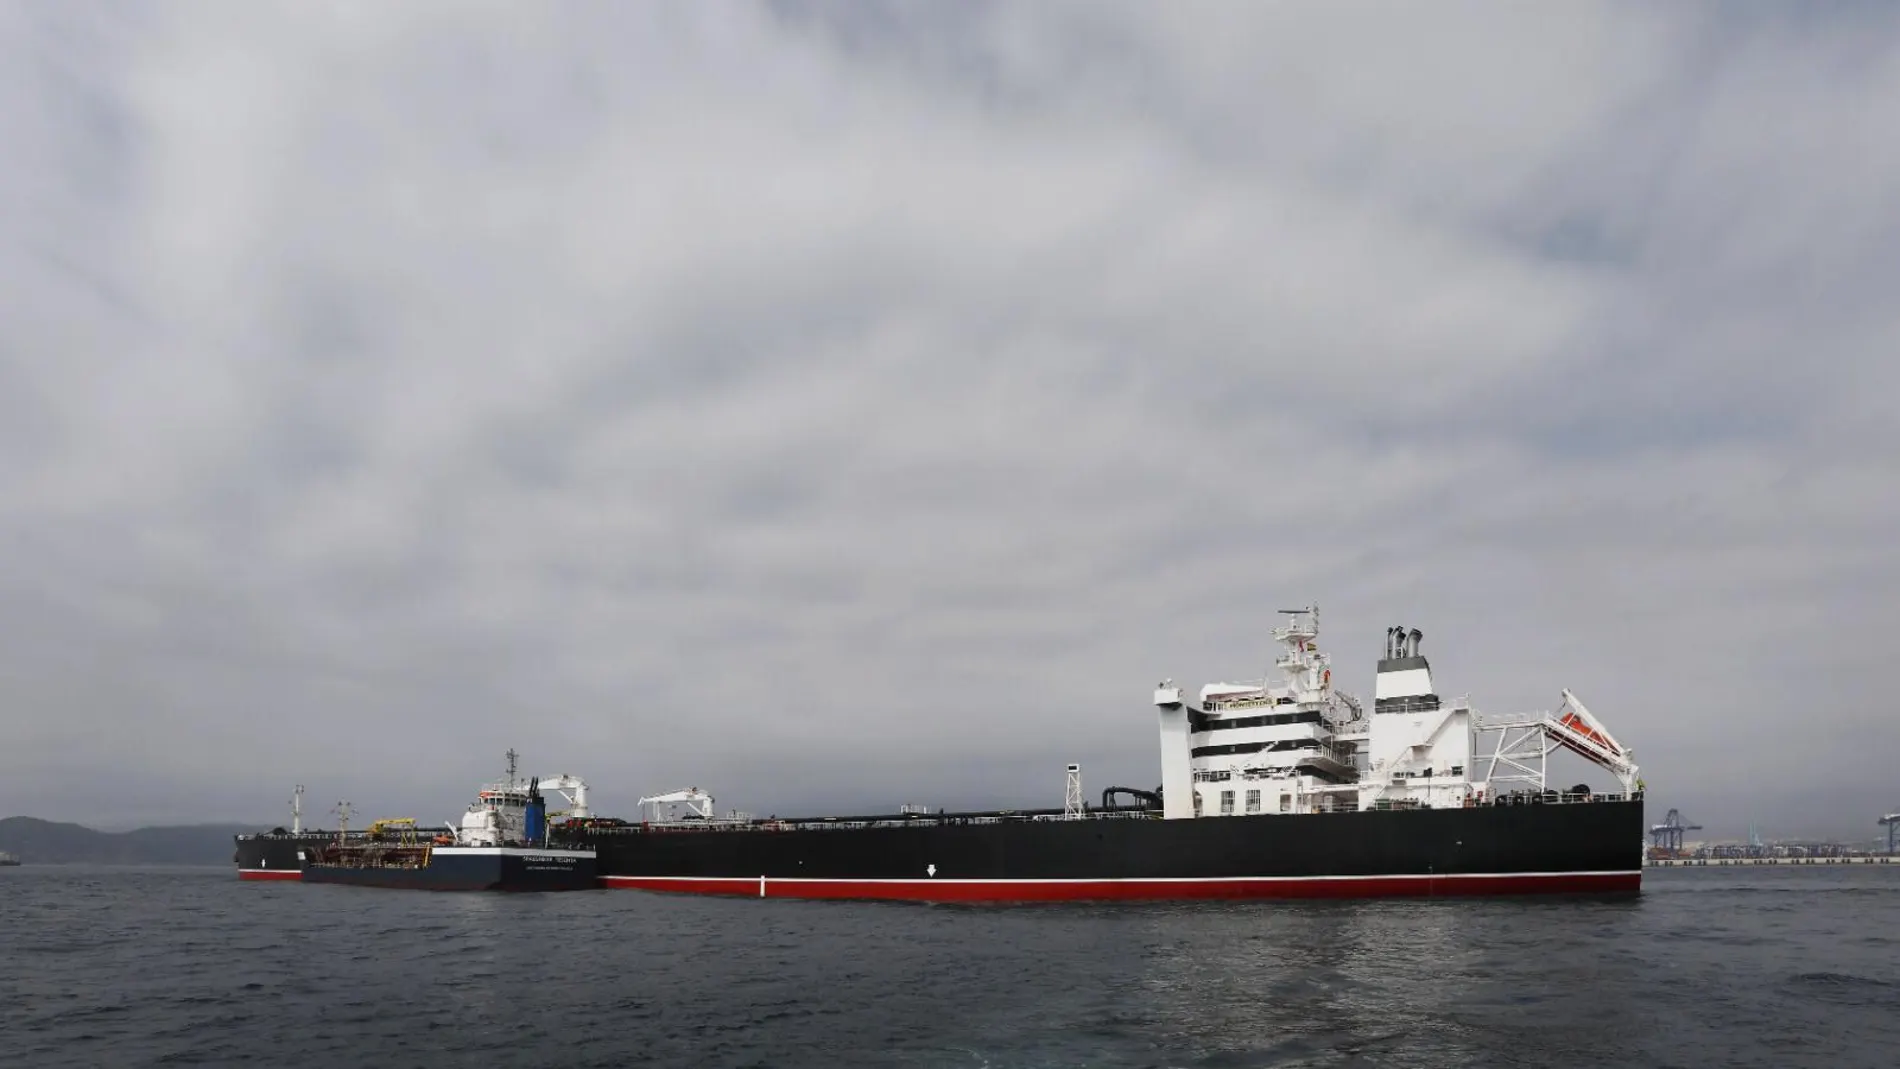 El buque Montestena, propiedad de Ibaizabal, ha sido elegido por Cepsa para las pruebas de su biocombustible avanzado